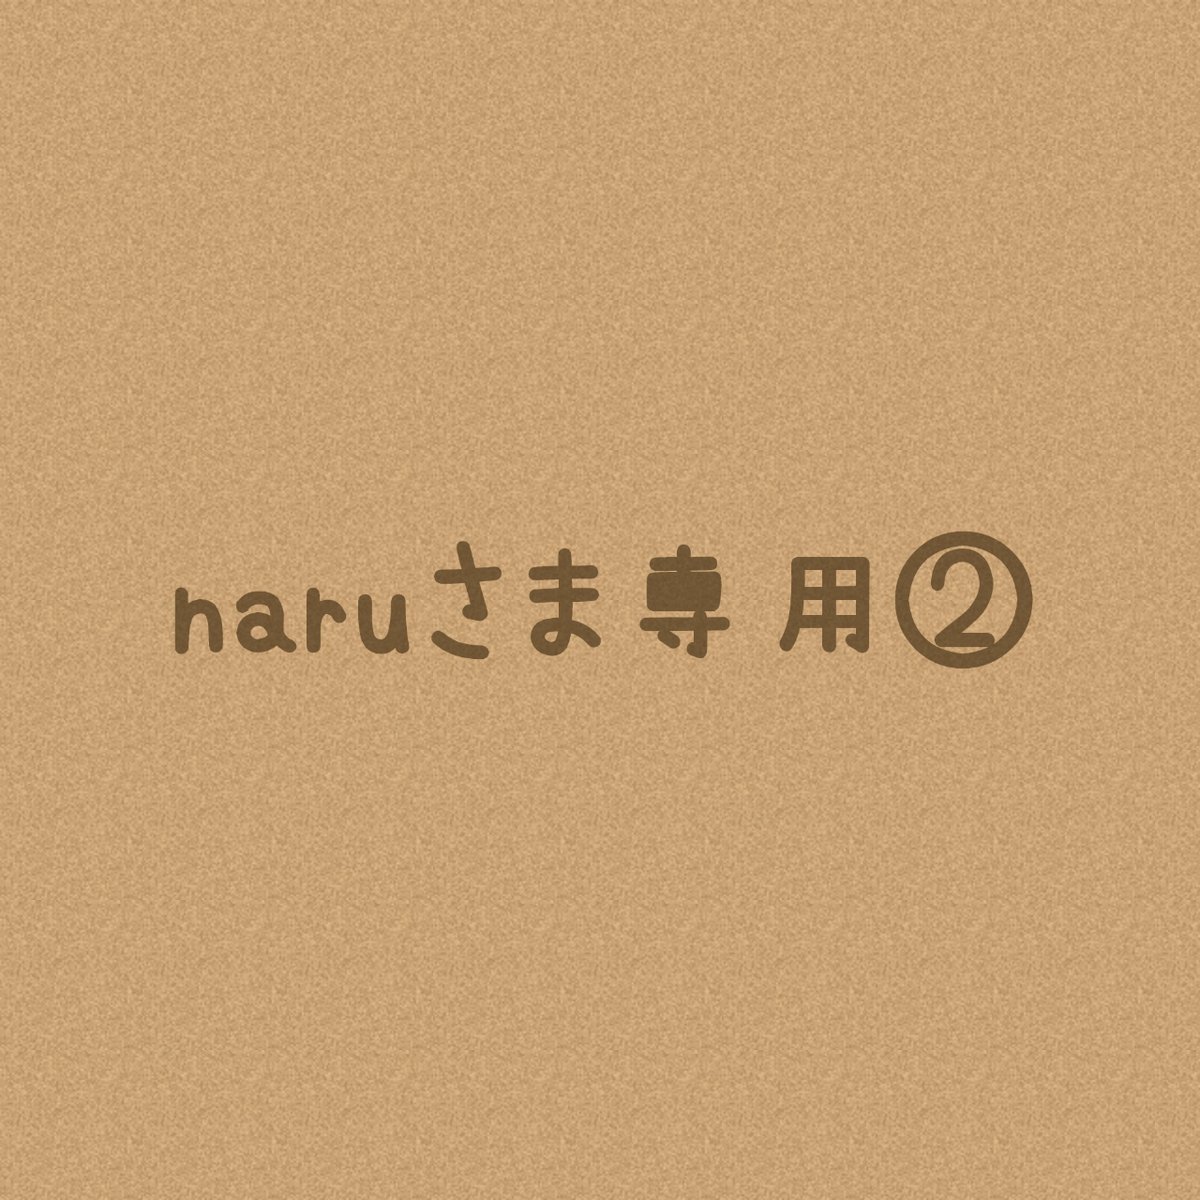 Naru*· 専用ページ ✧ オーダー待ち ✧ 専用ページ - アクセサリー